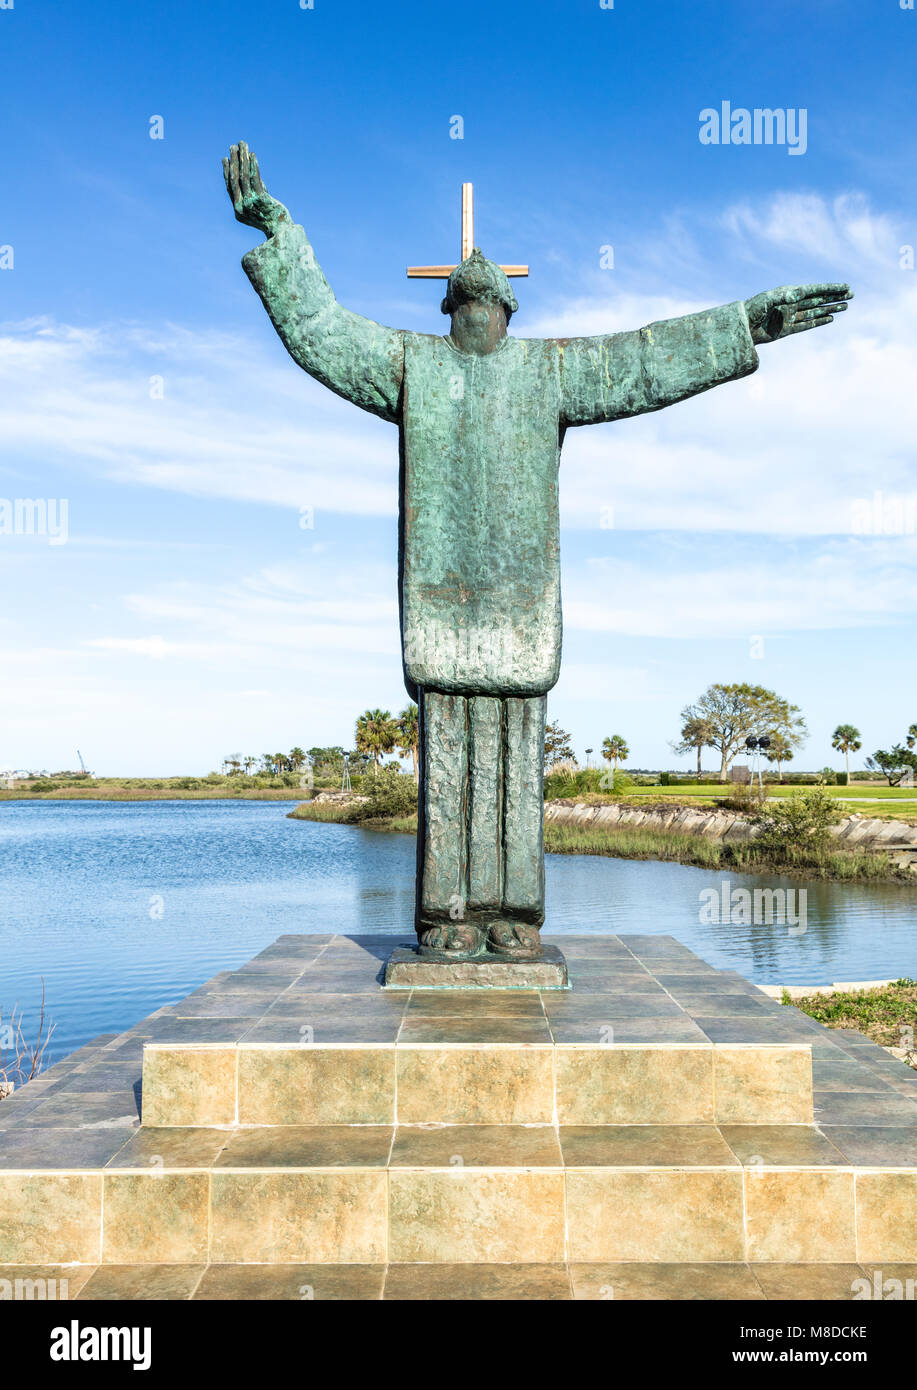 St Augustine, FL - Mars 07, 2018 : une vue de la statue en bronze du Père Francisco Lopez construite par Ivan Mestrovi. La statue est située sur le Banque D'Images